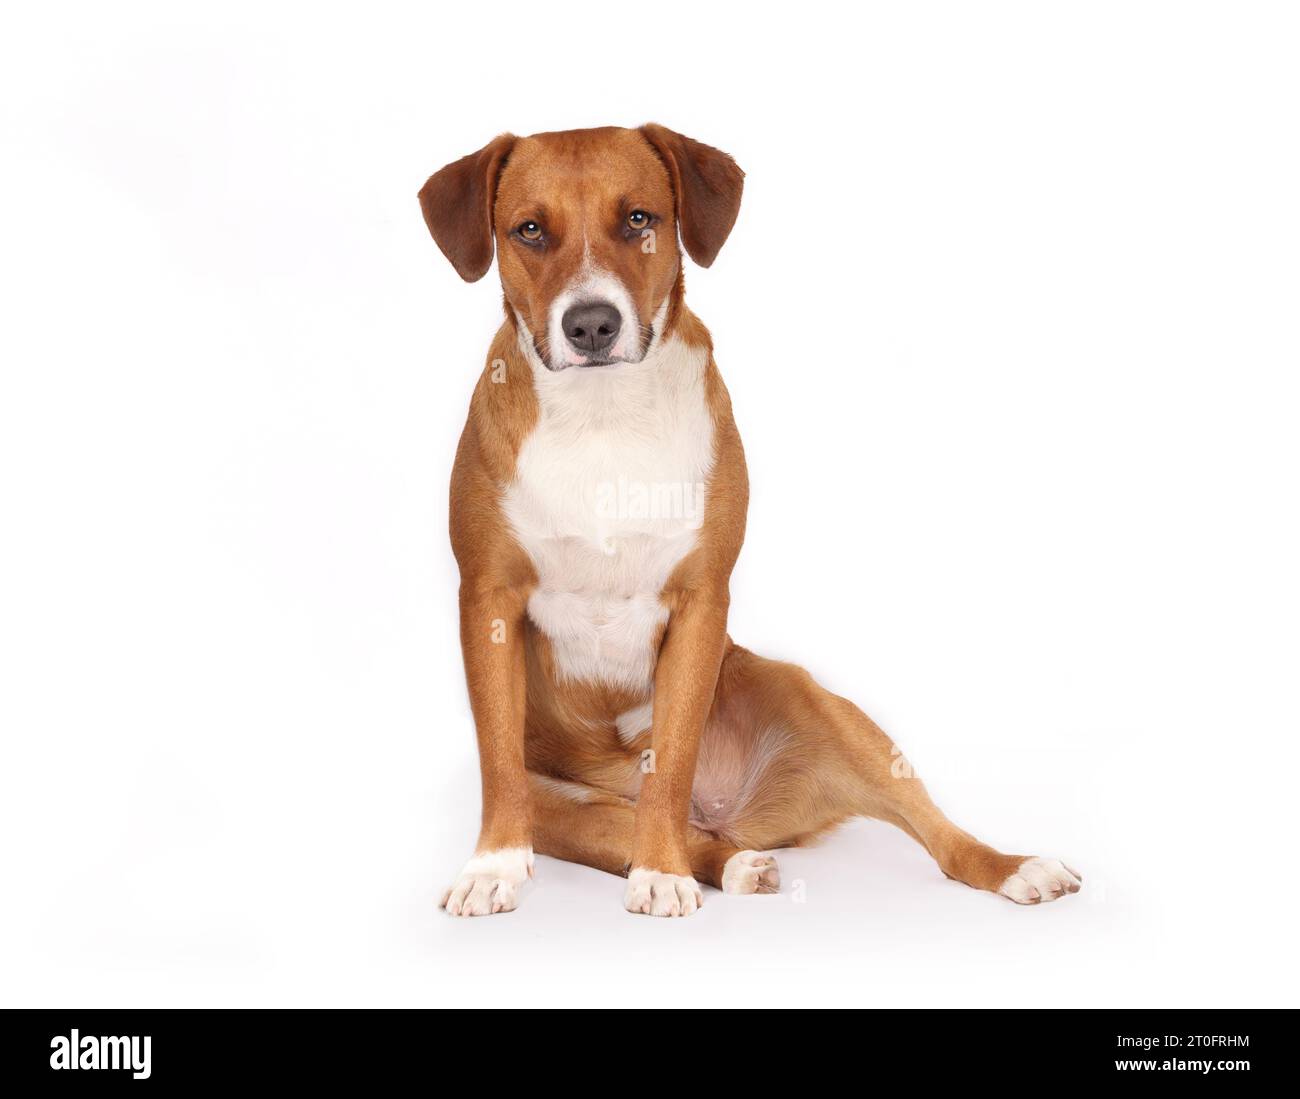 Entspannter Hund, der schlampig oder seitlich mit den Beinen sitzt. Hund mit lustiger Sitzposition, bekannt als Welpe sitzend. Mögliche gesundheitliche Probleme wie Verletzungen oder Hi Stockfoto